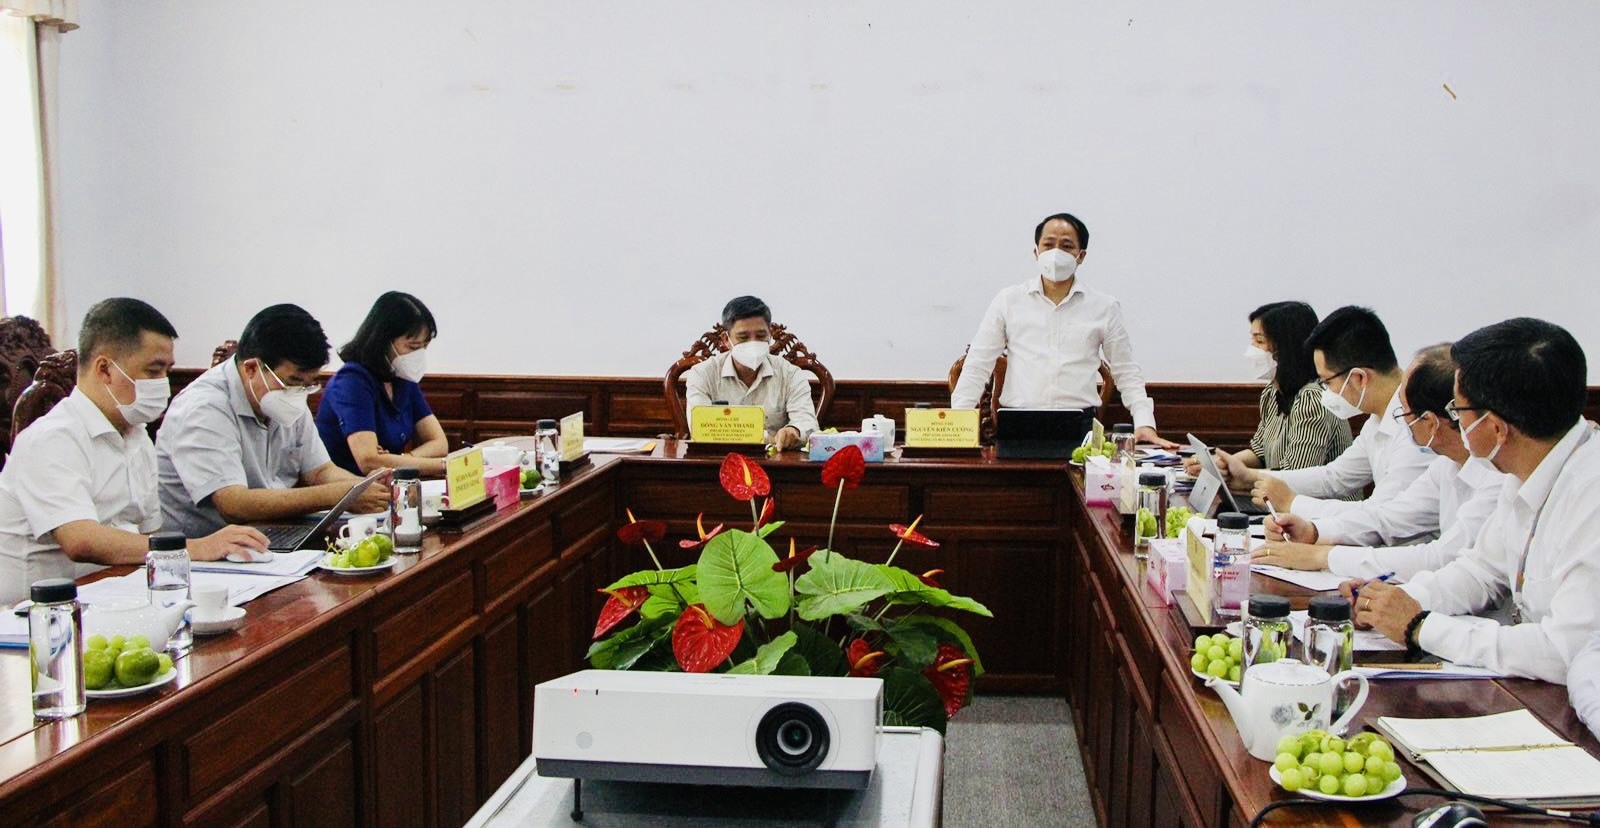 Đồng chí Nguyễn Kiên Cường, Phó Tổng giám đốc TCT phát biểu tại buổi làm việc.